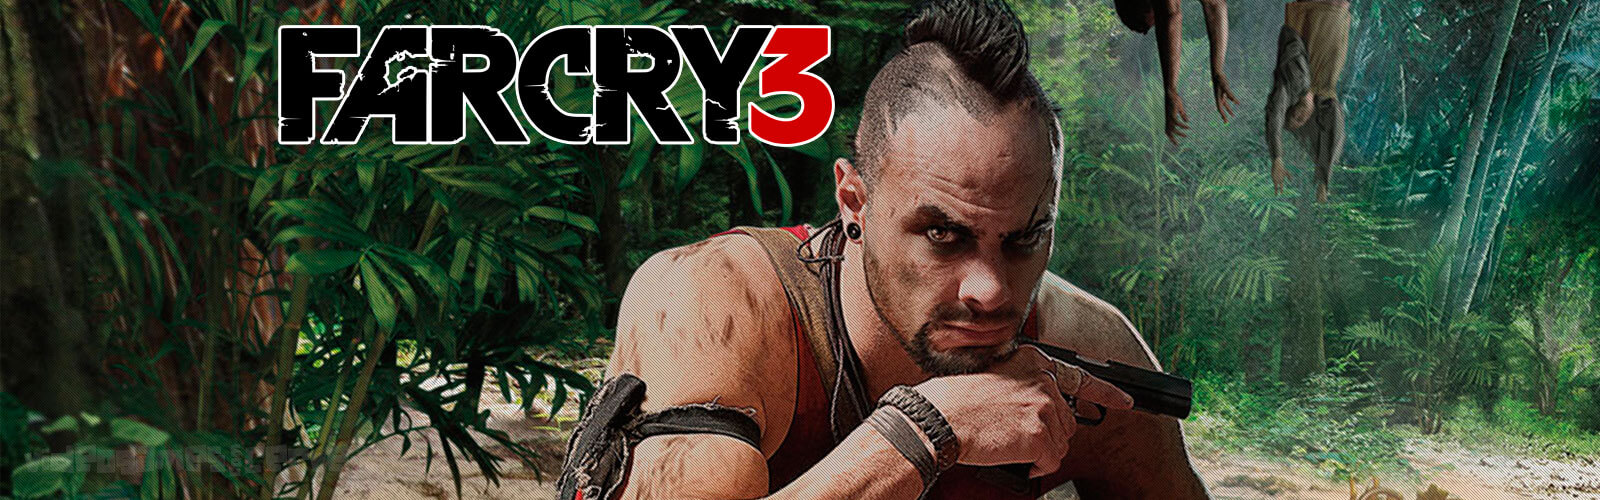 Análise - Far Cry 3 (Xbox 360) Cover